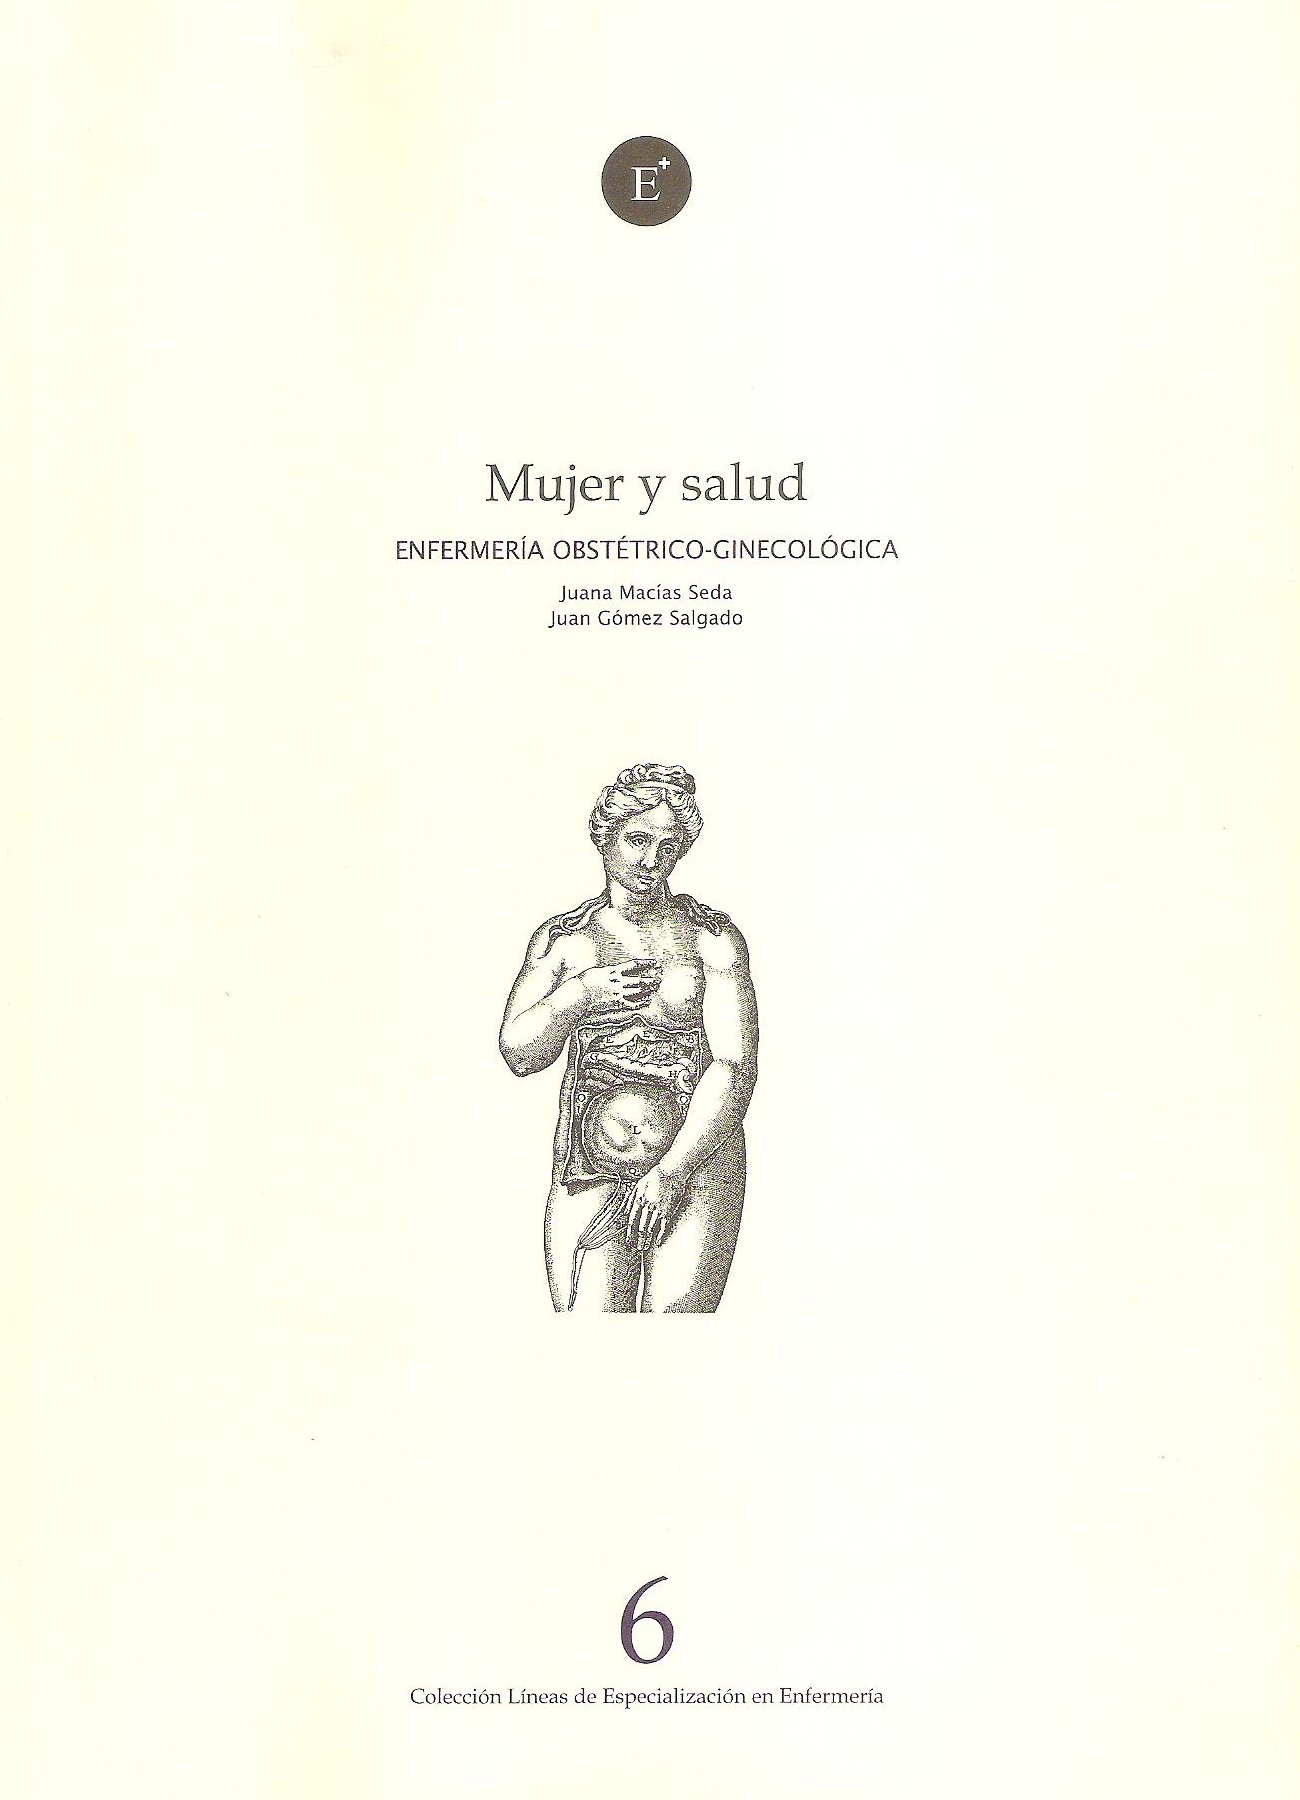 Imagen de portada del libro Mujer y salud